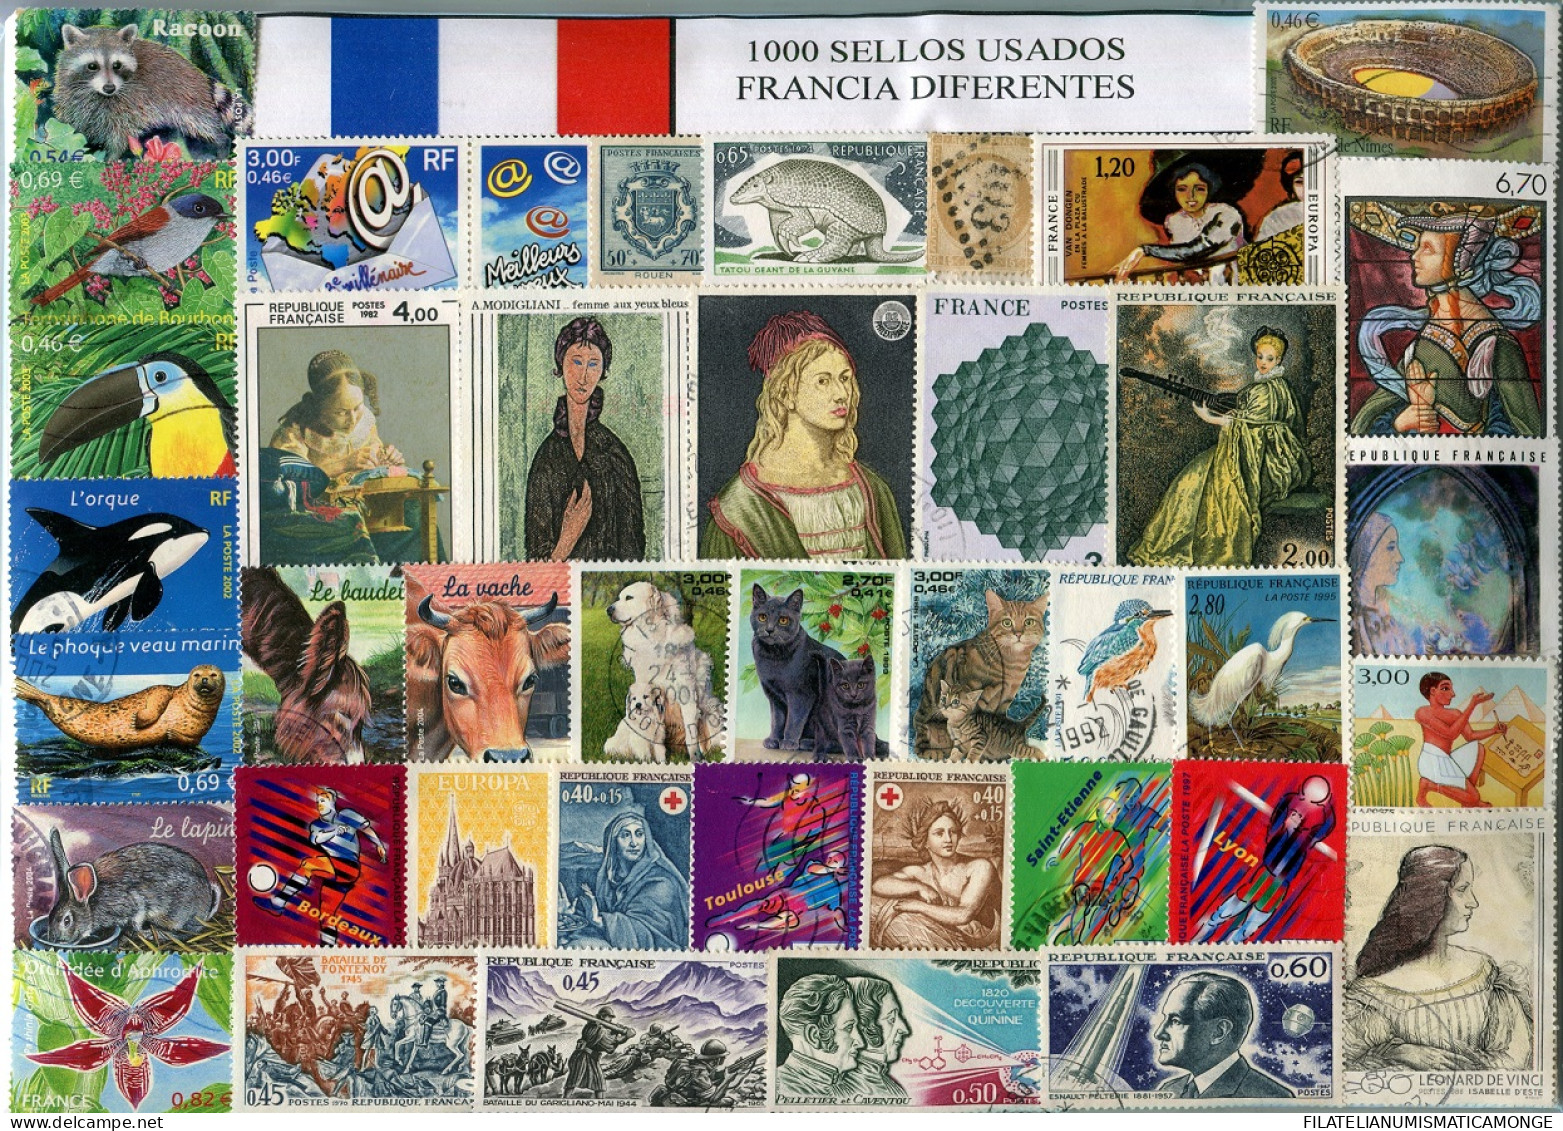  Offer - Lot Stamps - Paqueteria  Francia / Francia 1000 Sellos Diferentes / El - Lots & Kiloware (mixtures) - Min. 1000 Stamps